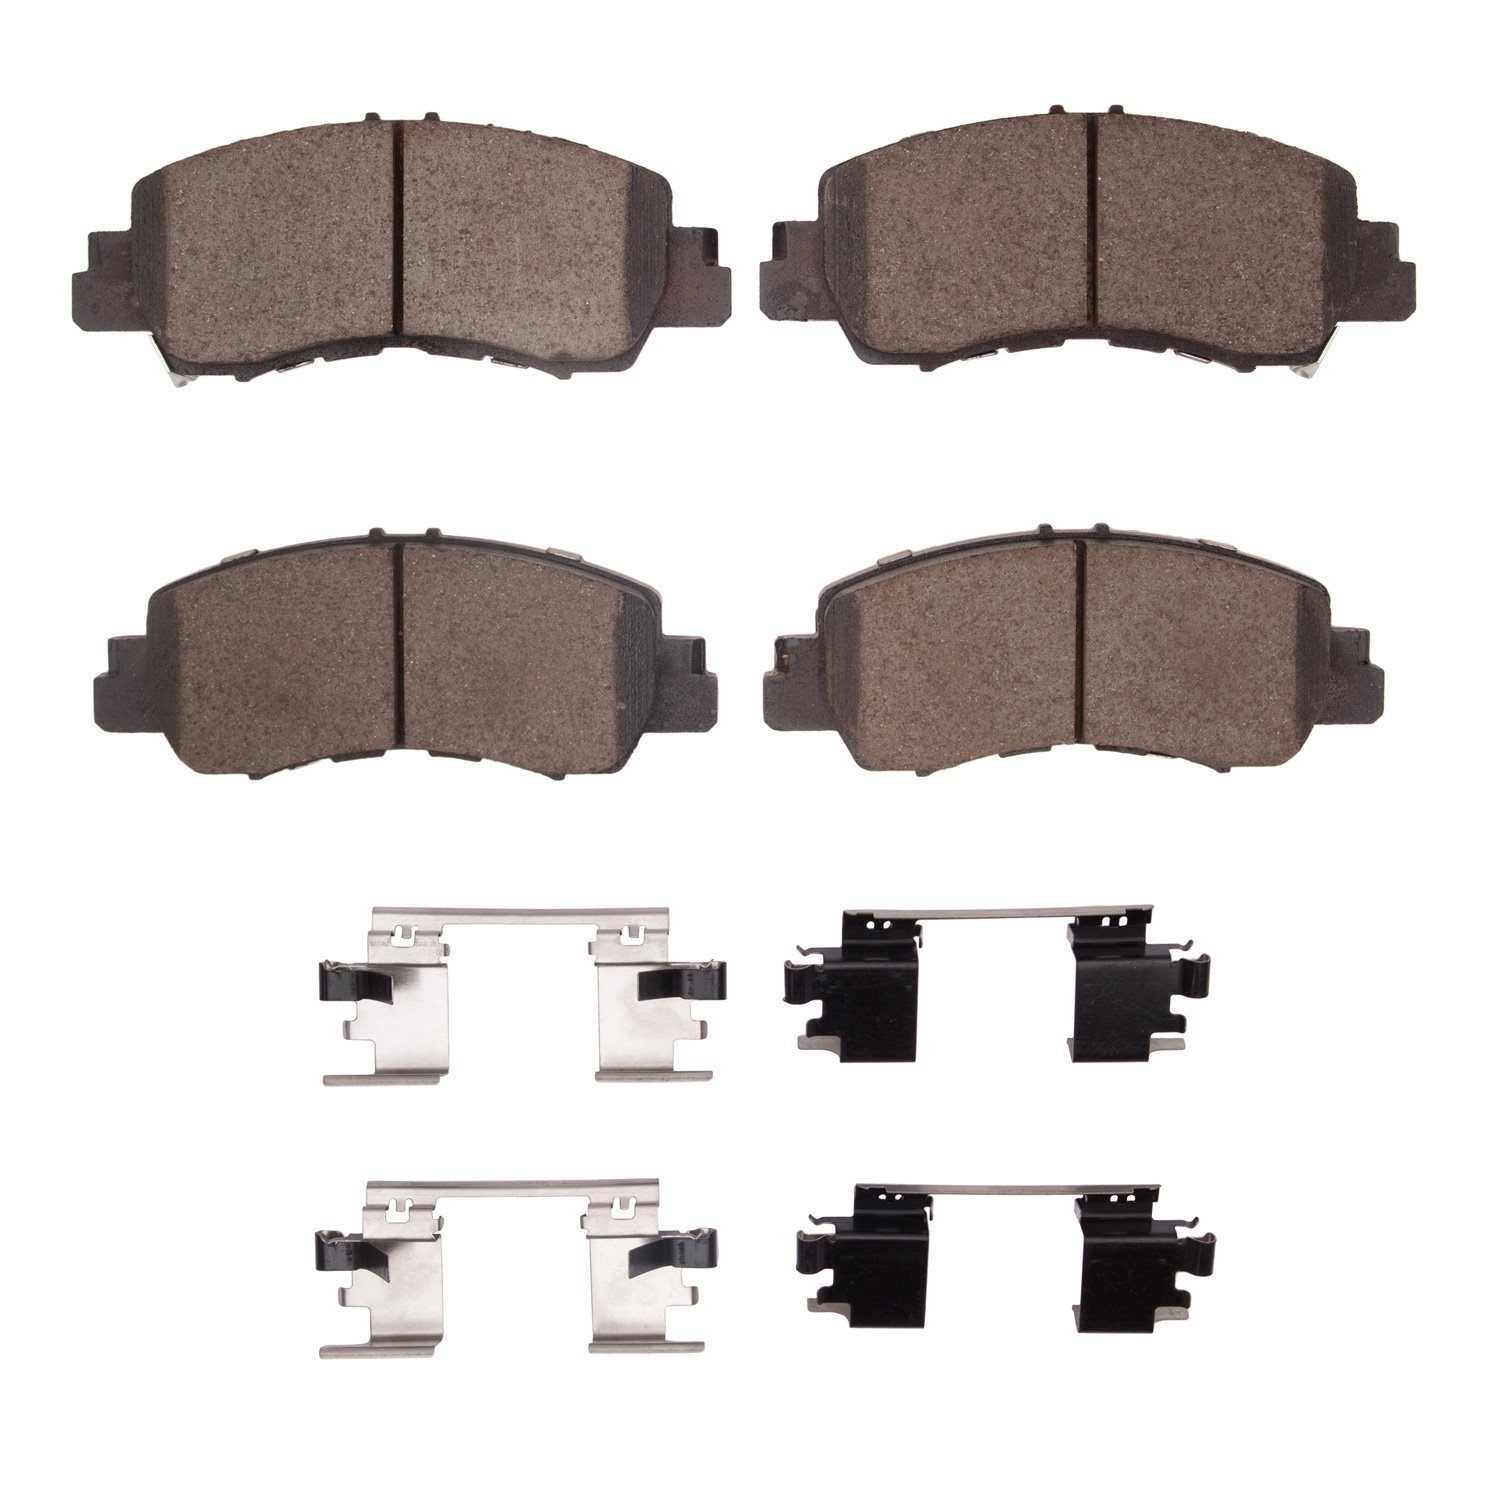 1310-2178-01 3000-Series Ceramic Brake Pads & Hardware Kit, Fits Select Mitsubishi, Position: Front